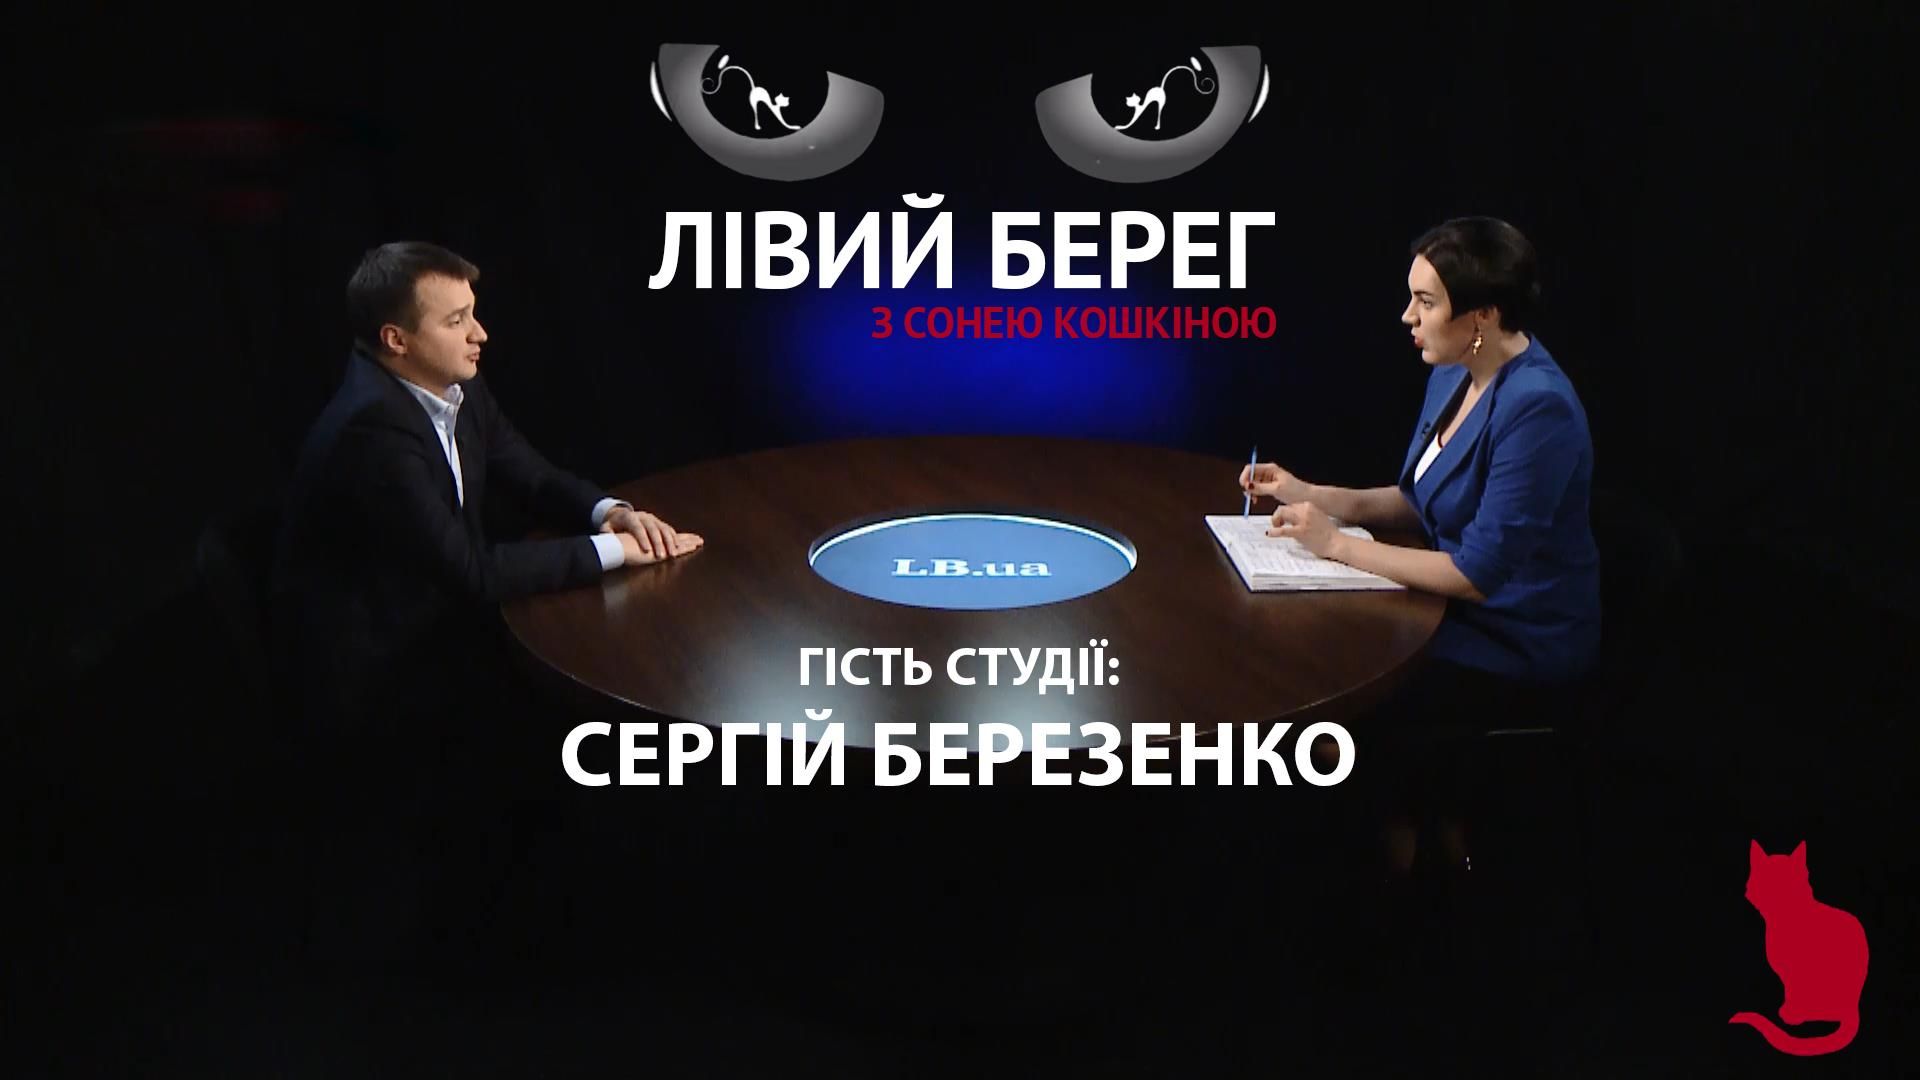 В нашей команды нет цели второго срока Порошенко, – откровенное интервью с нардепом Сергеем Бере